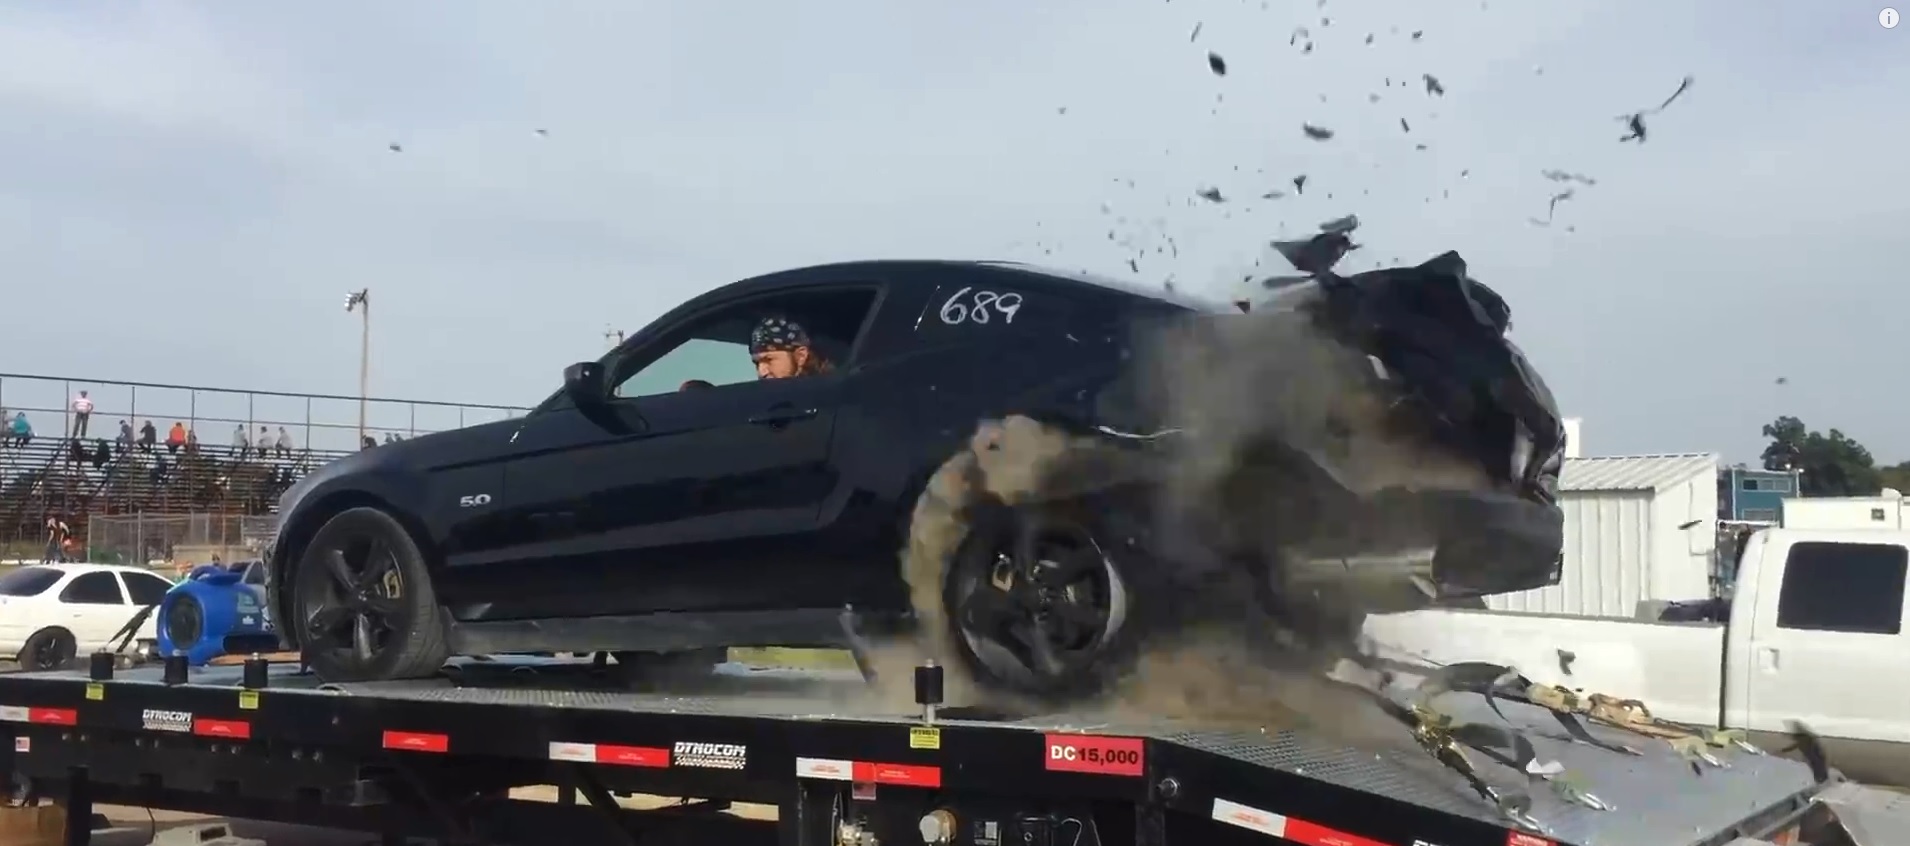 Ford Mustang разогнался на месте до взрыва колеса (ВИДЕО)